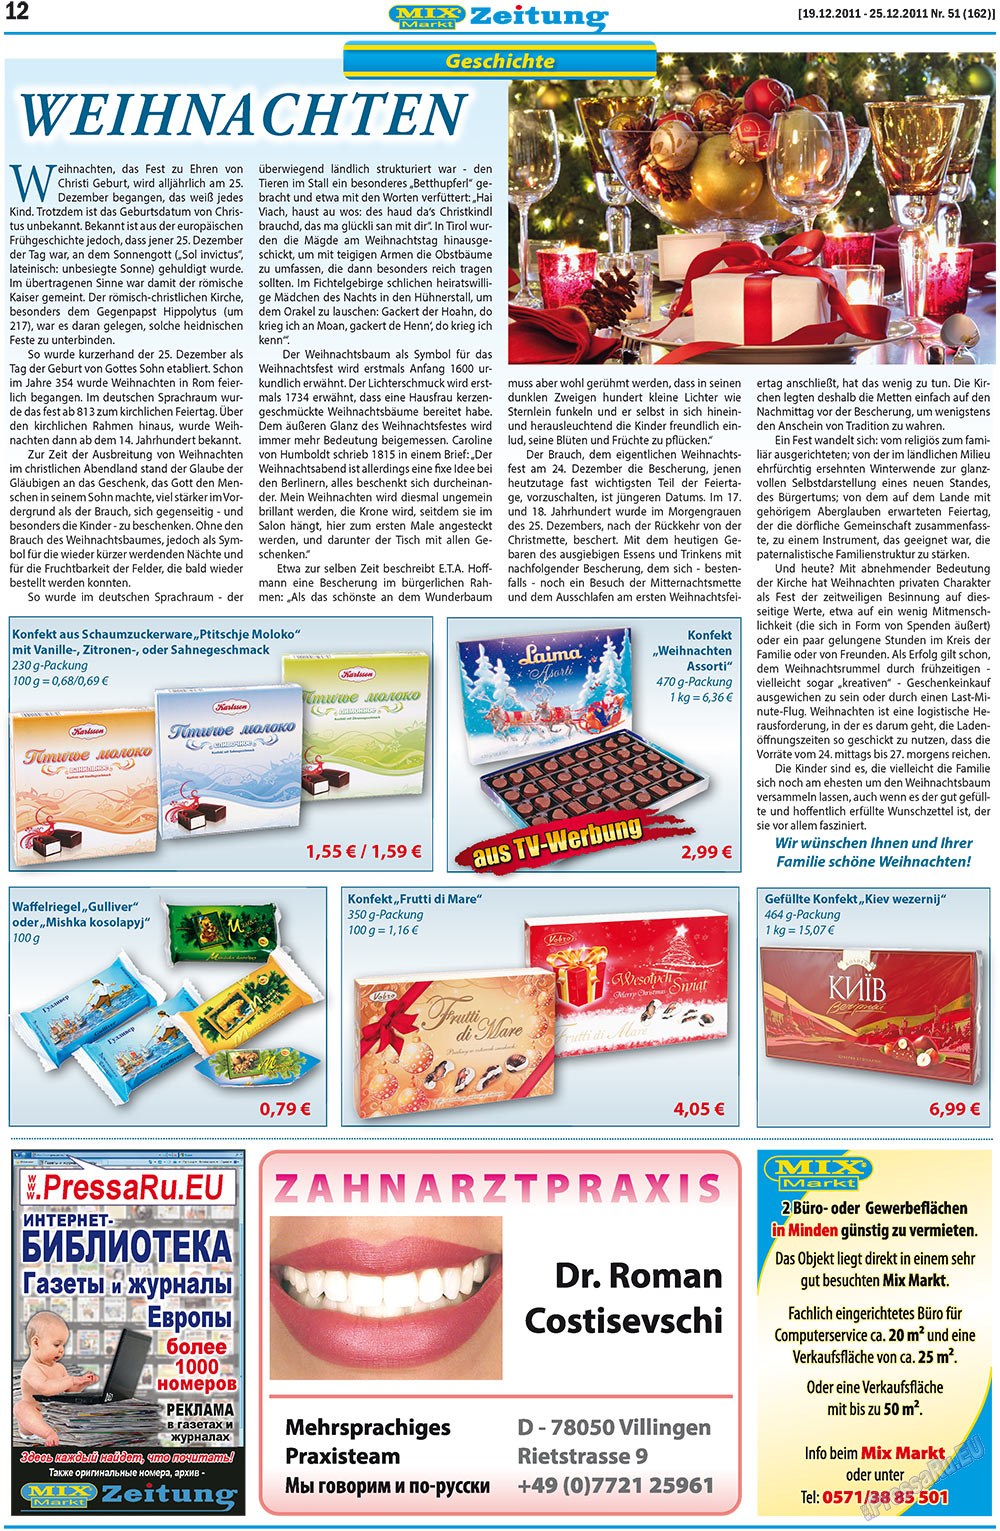 MIX-Markt Zeitung (газета). 2011 год, номер 51, стр. 12